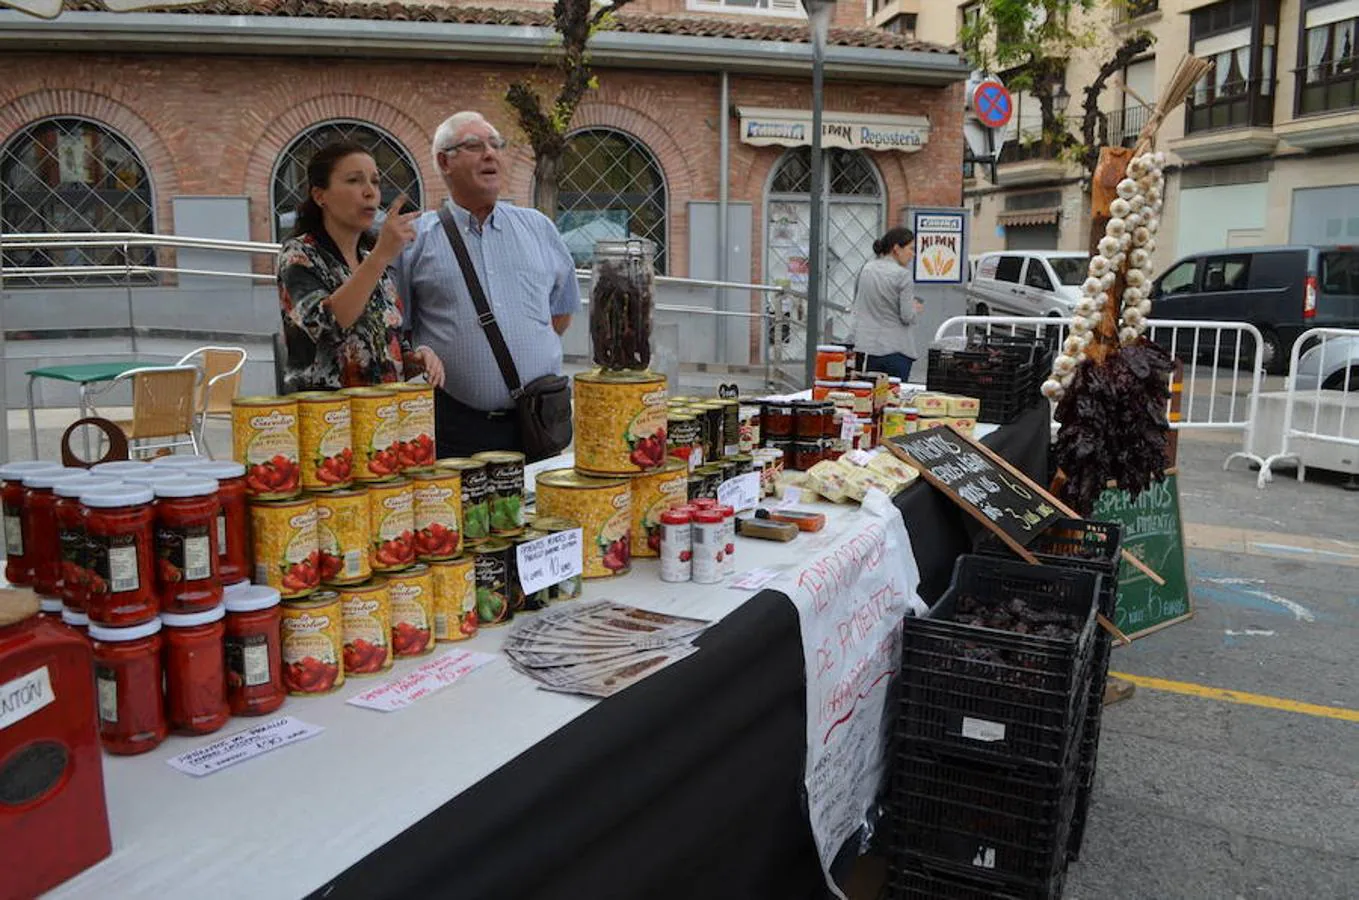 Los pimientos y la tradición del asado para consumo familiar dieron lugar a una bonita celebración en la plaza del Raso de Calahorra